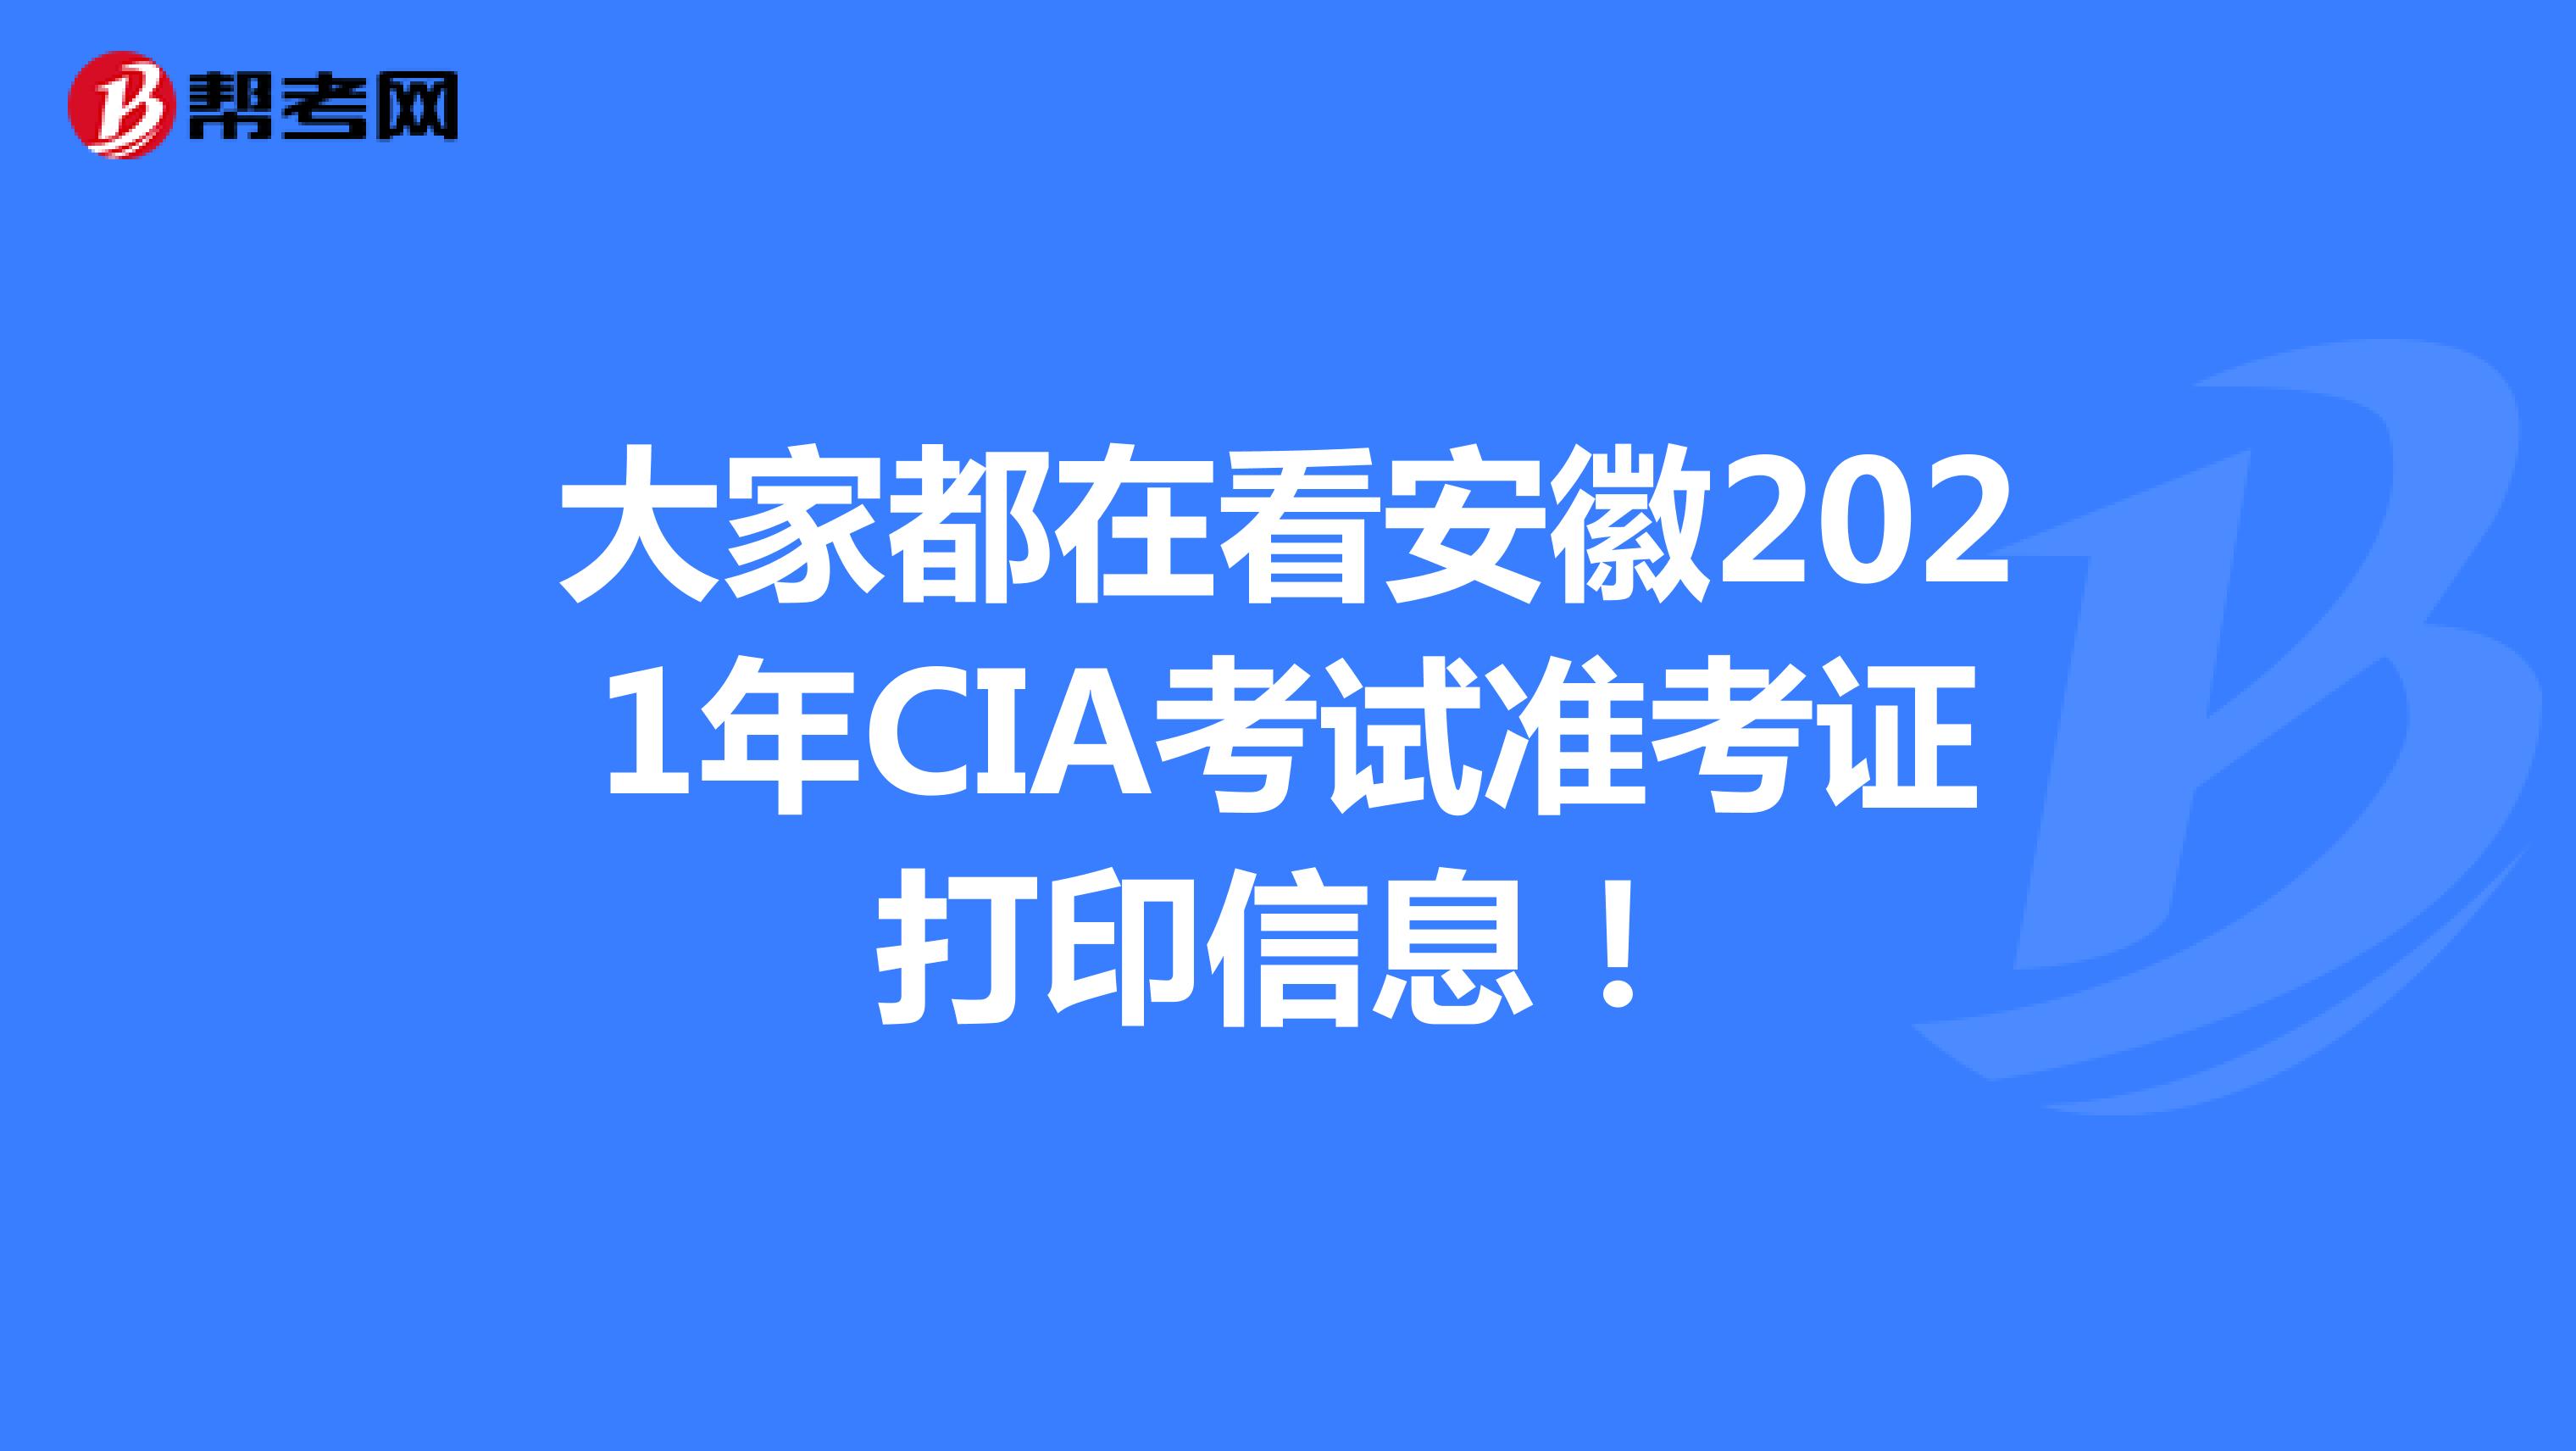 大家都在看安徽2021年CIA考试准考证打印信息！